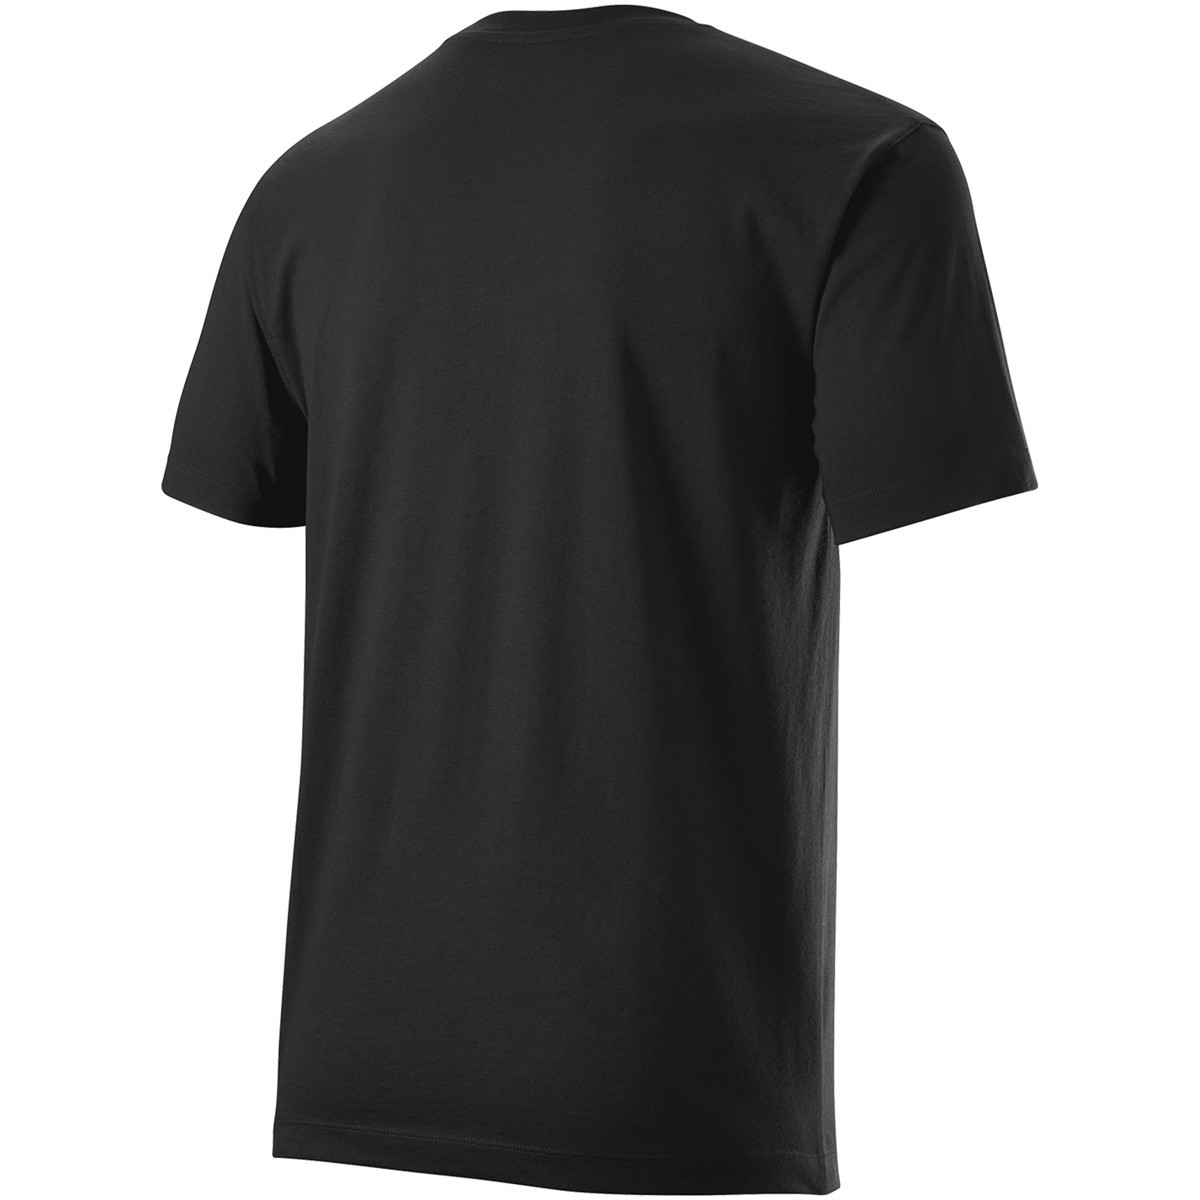 Wilson Bela Tech T-shirt - Black